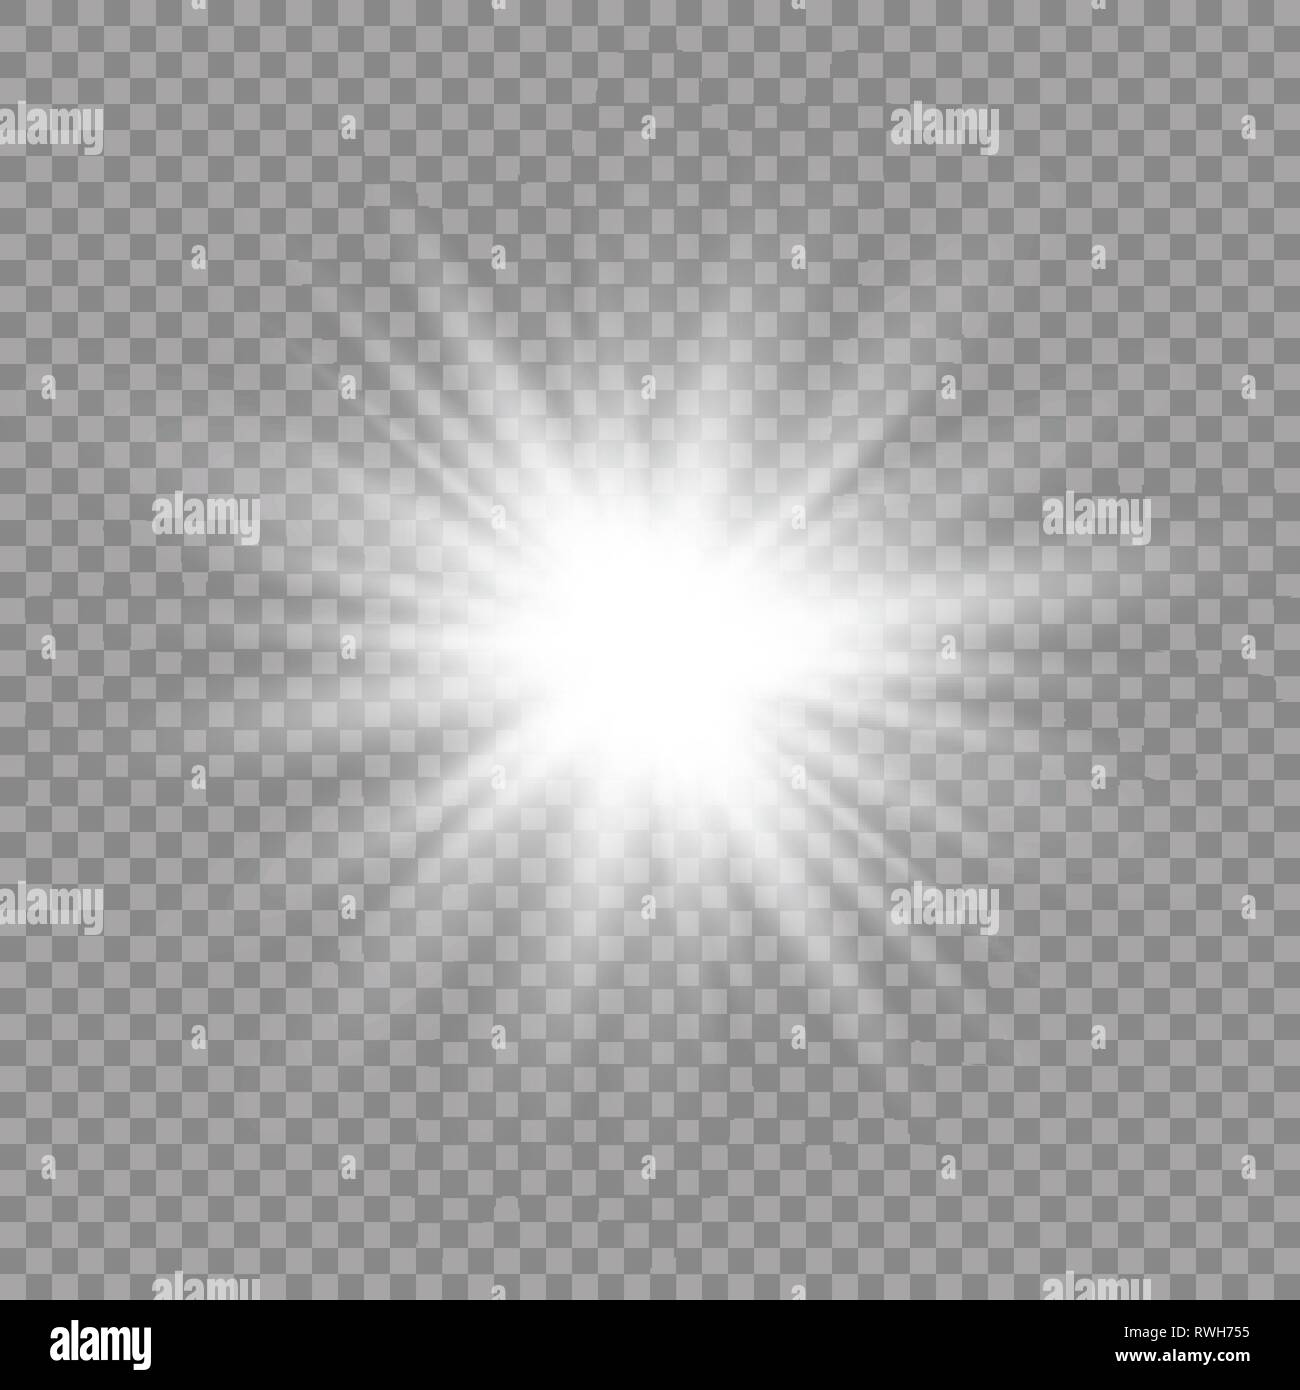 Candela di effetto di luce. Star burst con bagliori. Sun. illustrazione vettoriale Illustrazione Vettoriale